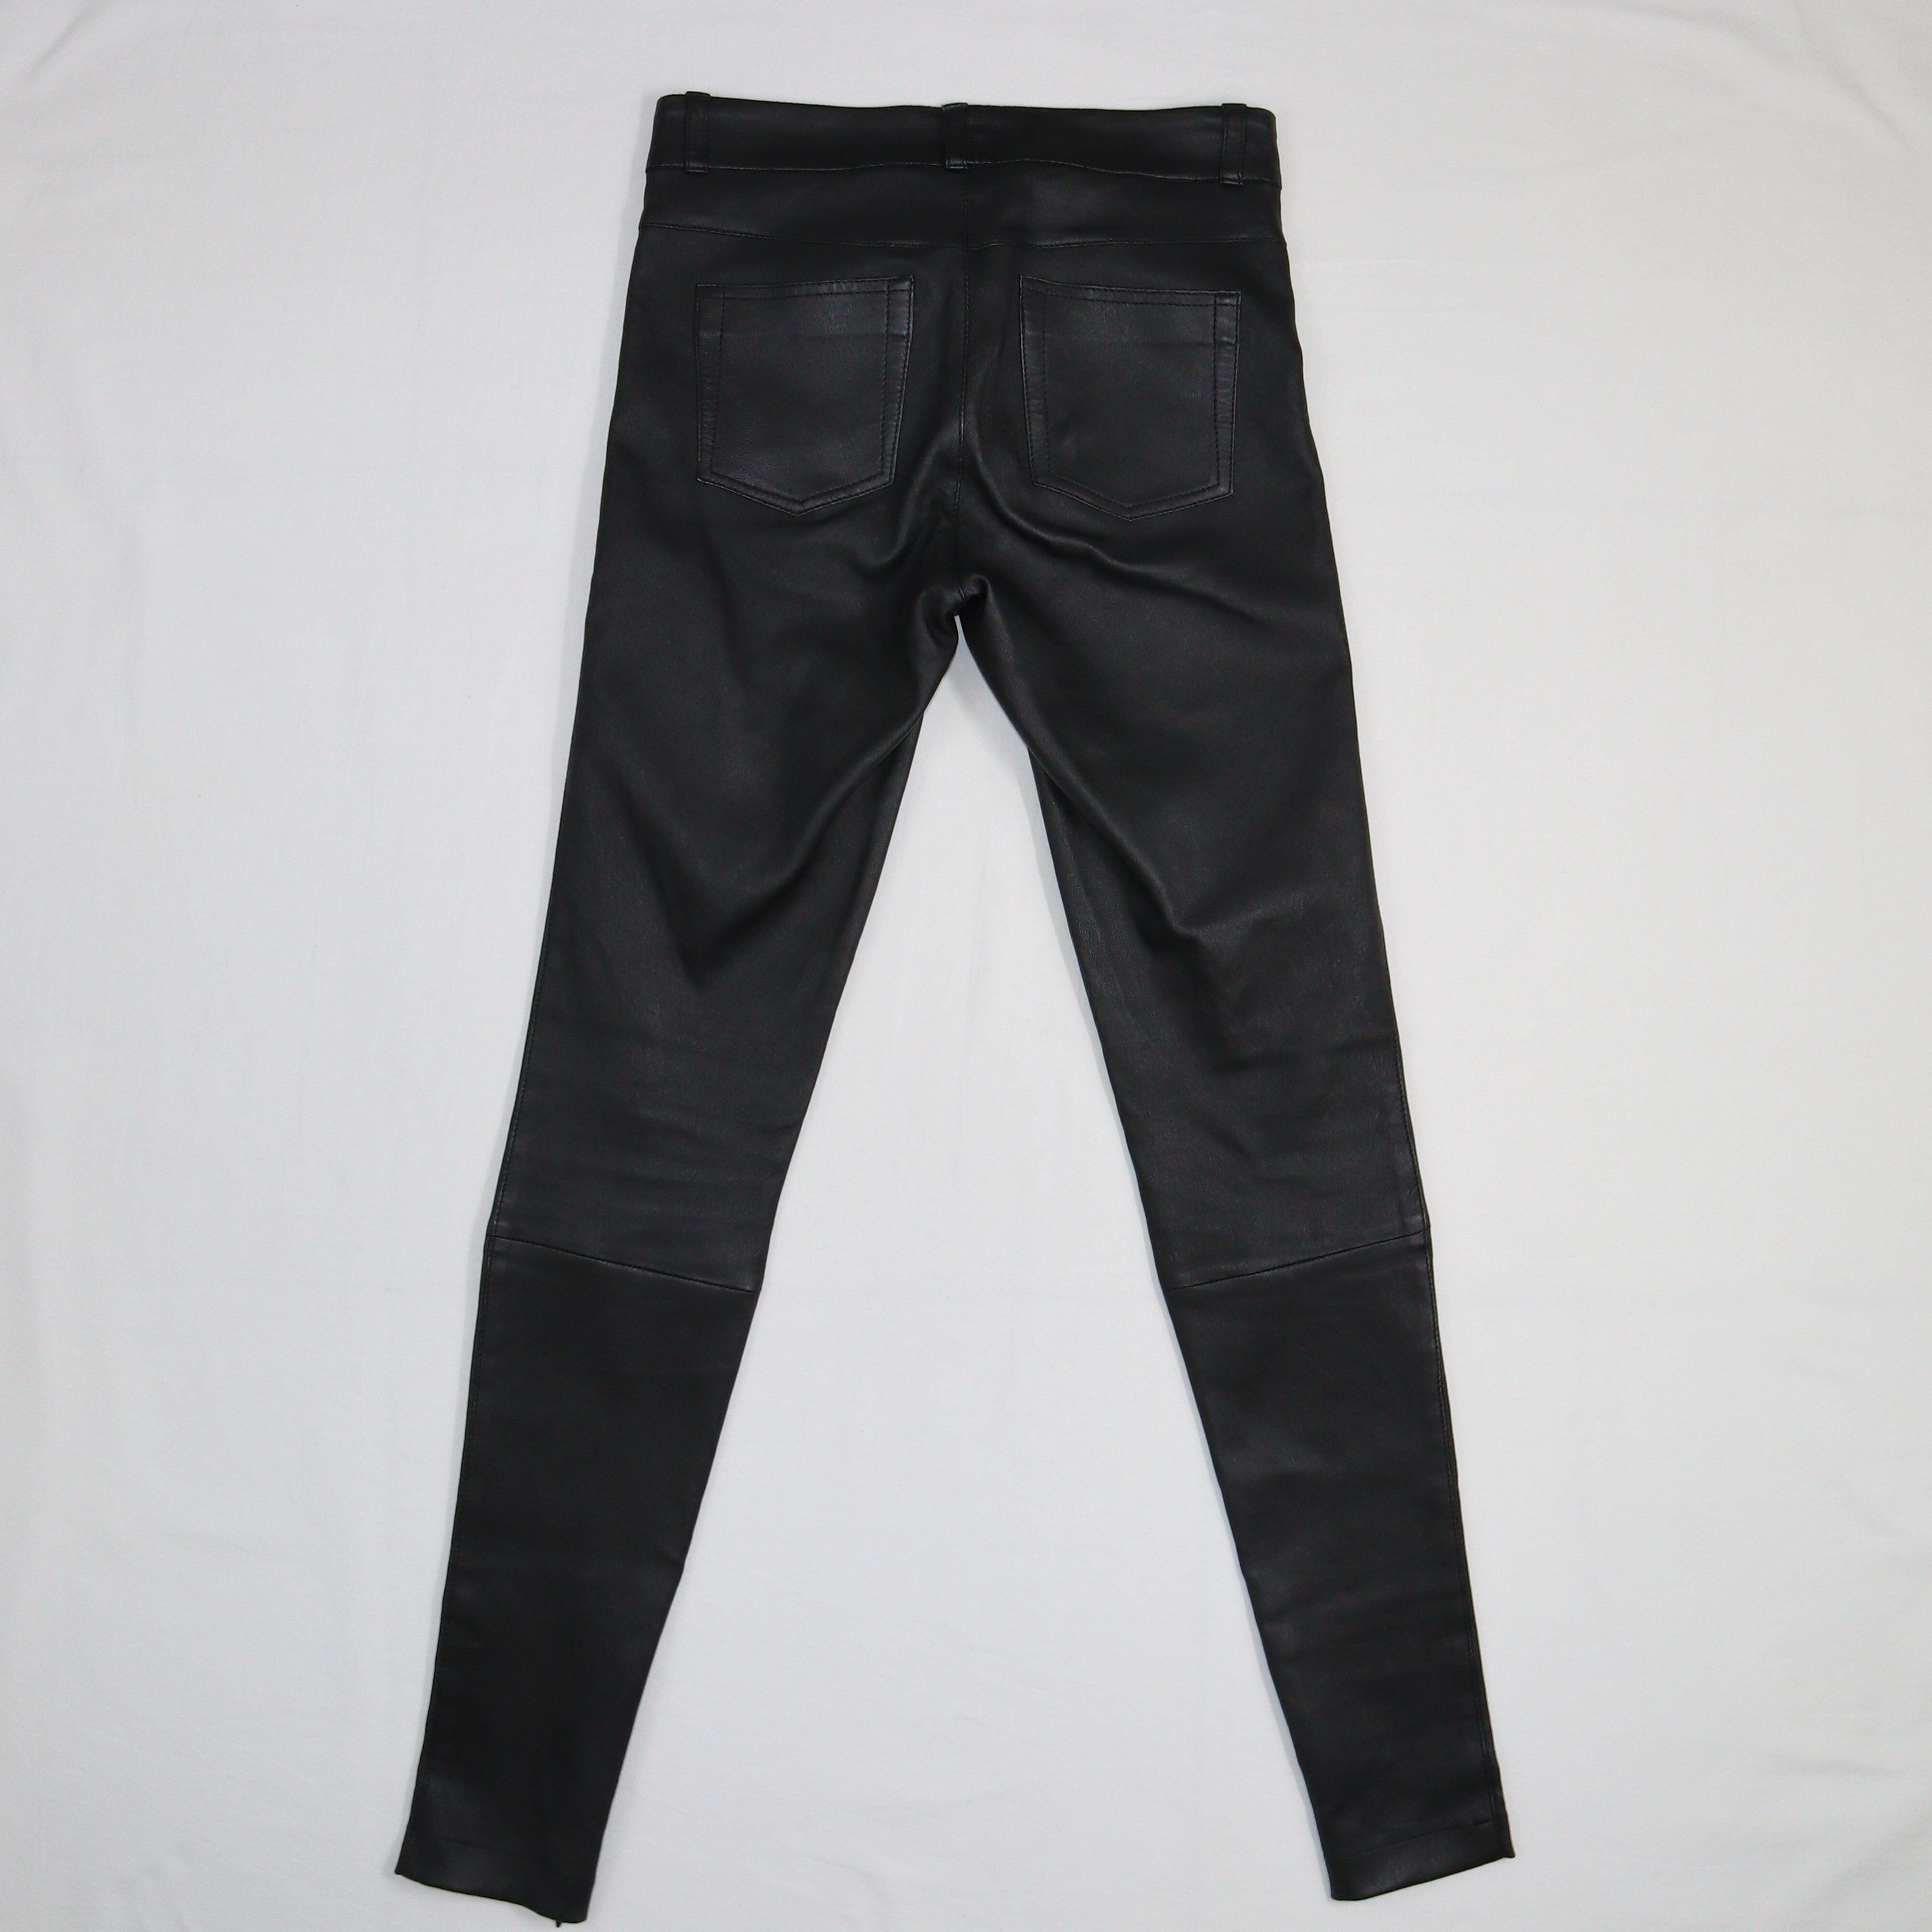 Black Ankle Zip Skinny Pants Clothing Set 